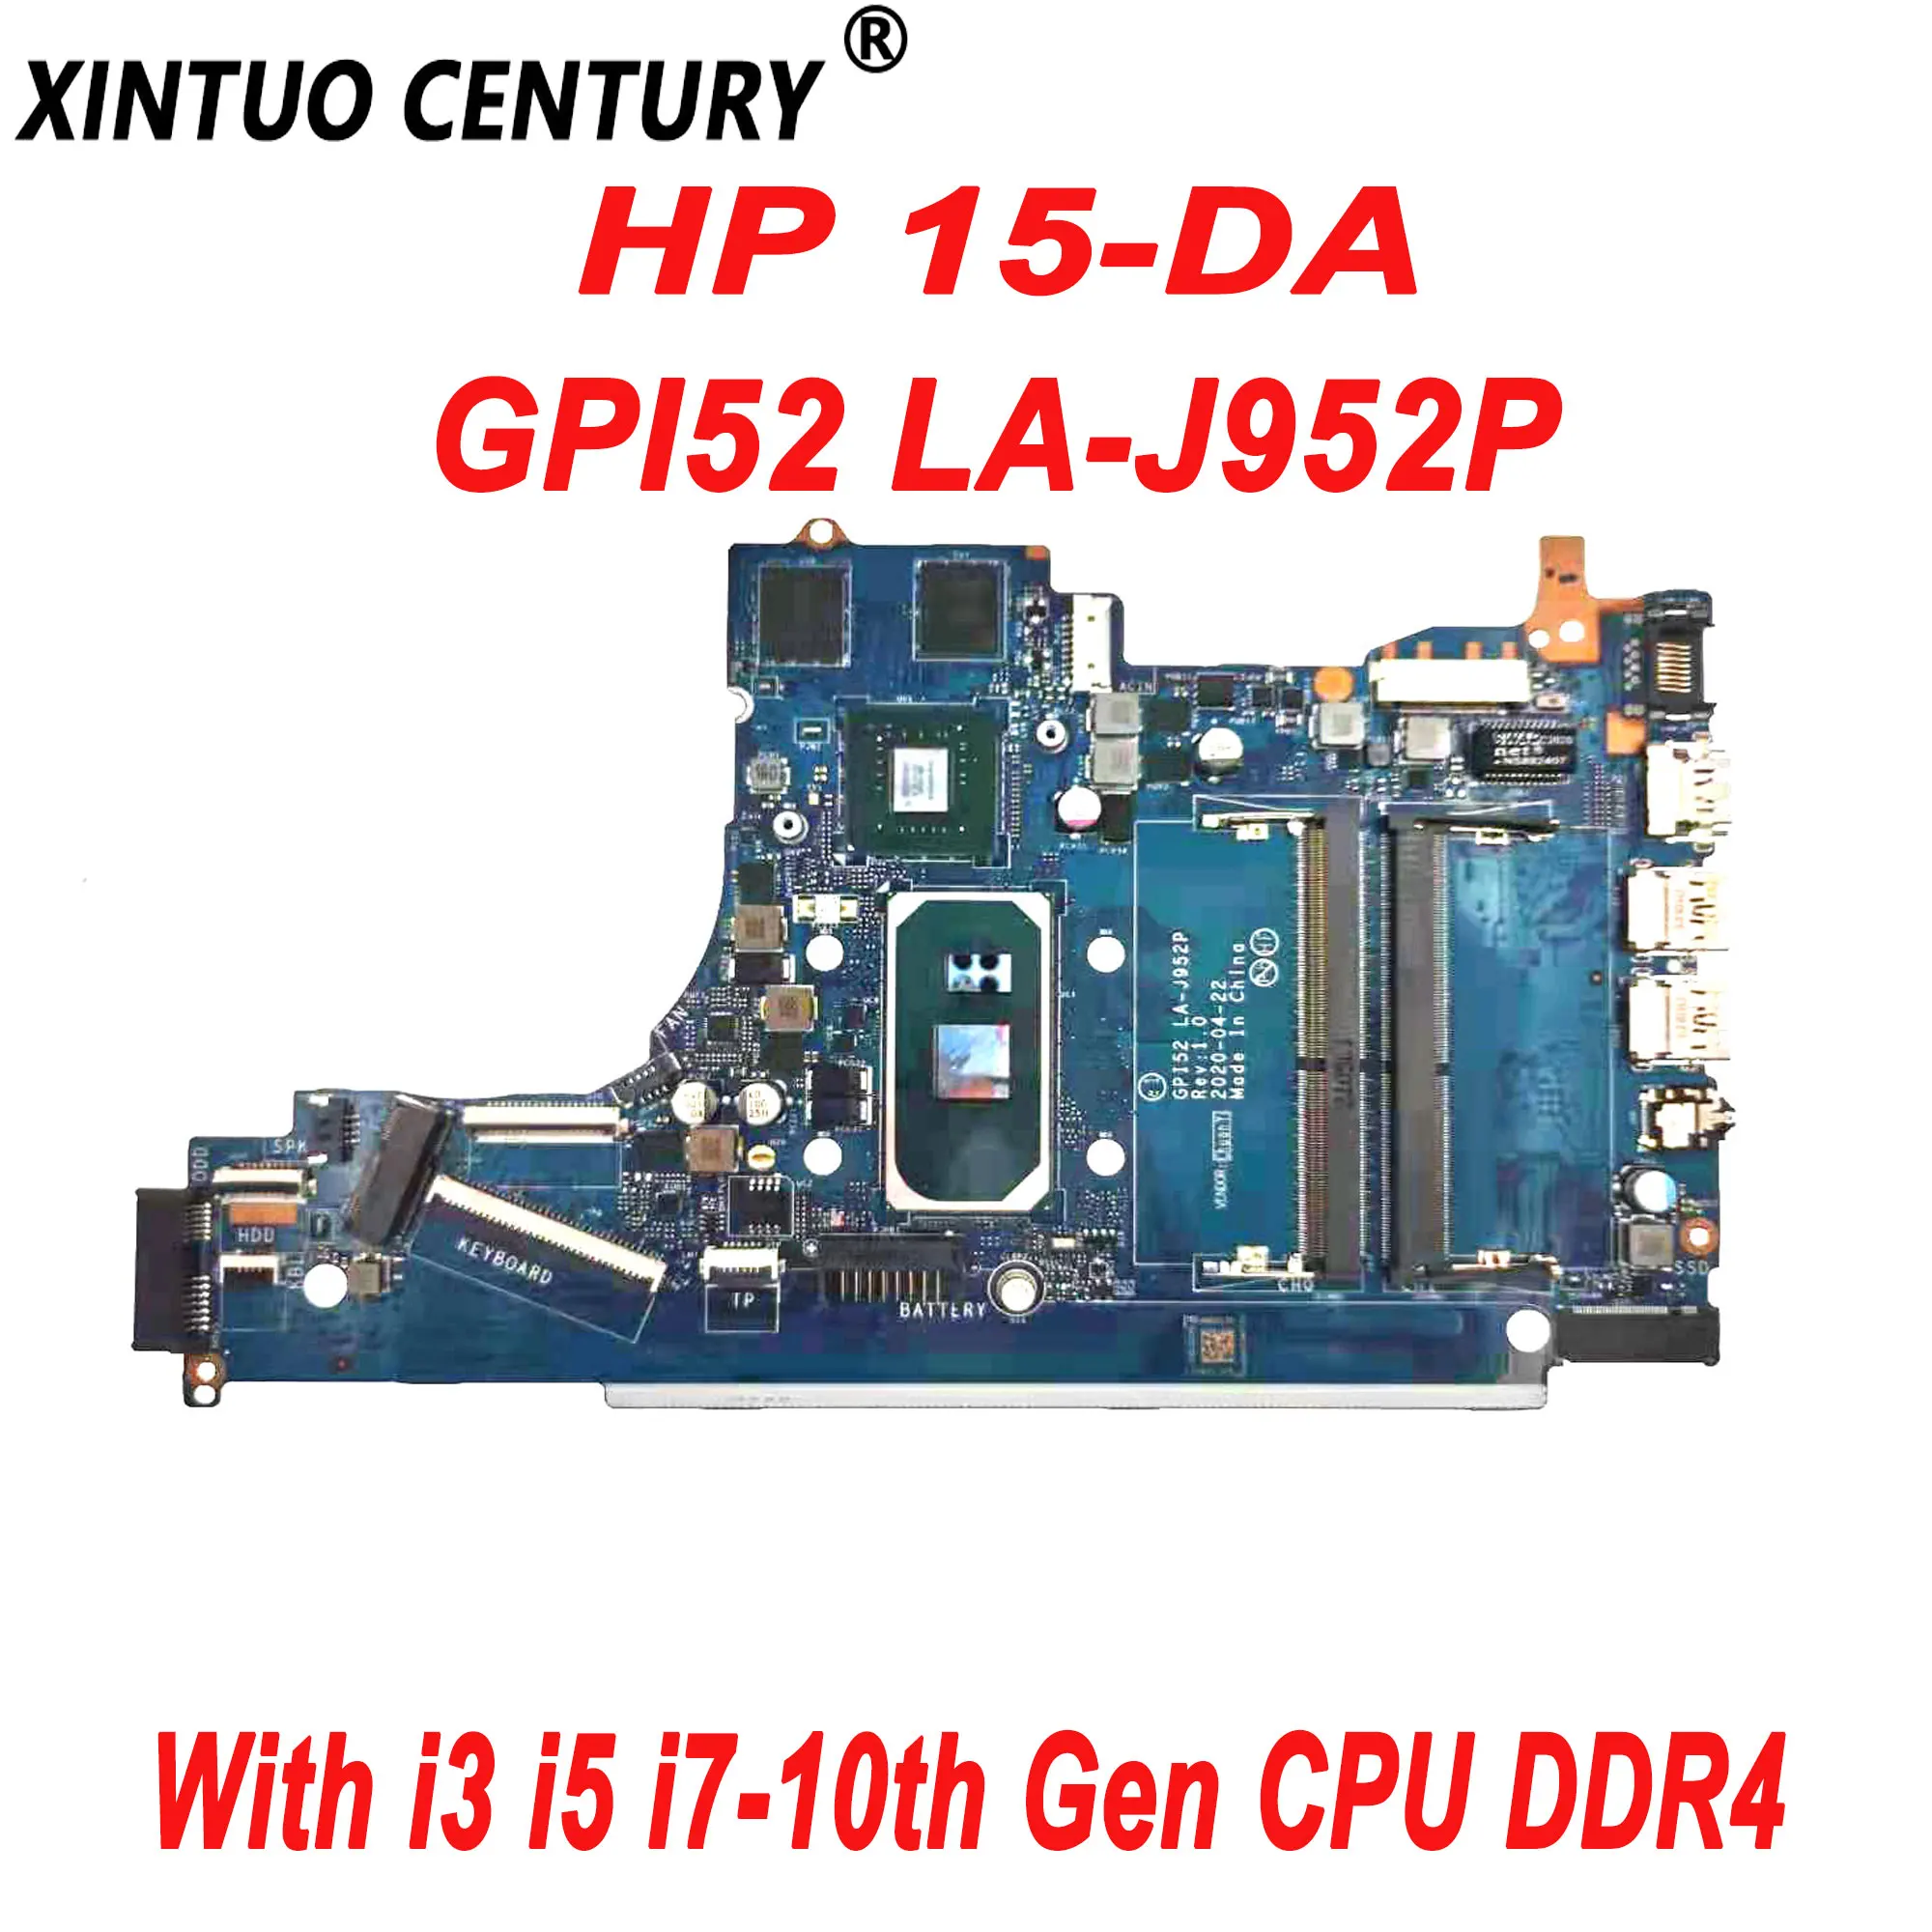 

Новая оригинальная материнская плата GPI52 для ноутбука HP 15-DA, материнская плата с i3 i5 LA-J952P Gen CPU DDR4 100%, протестированная работа